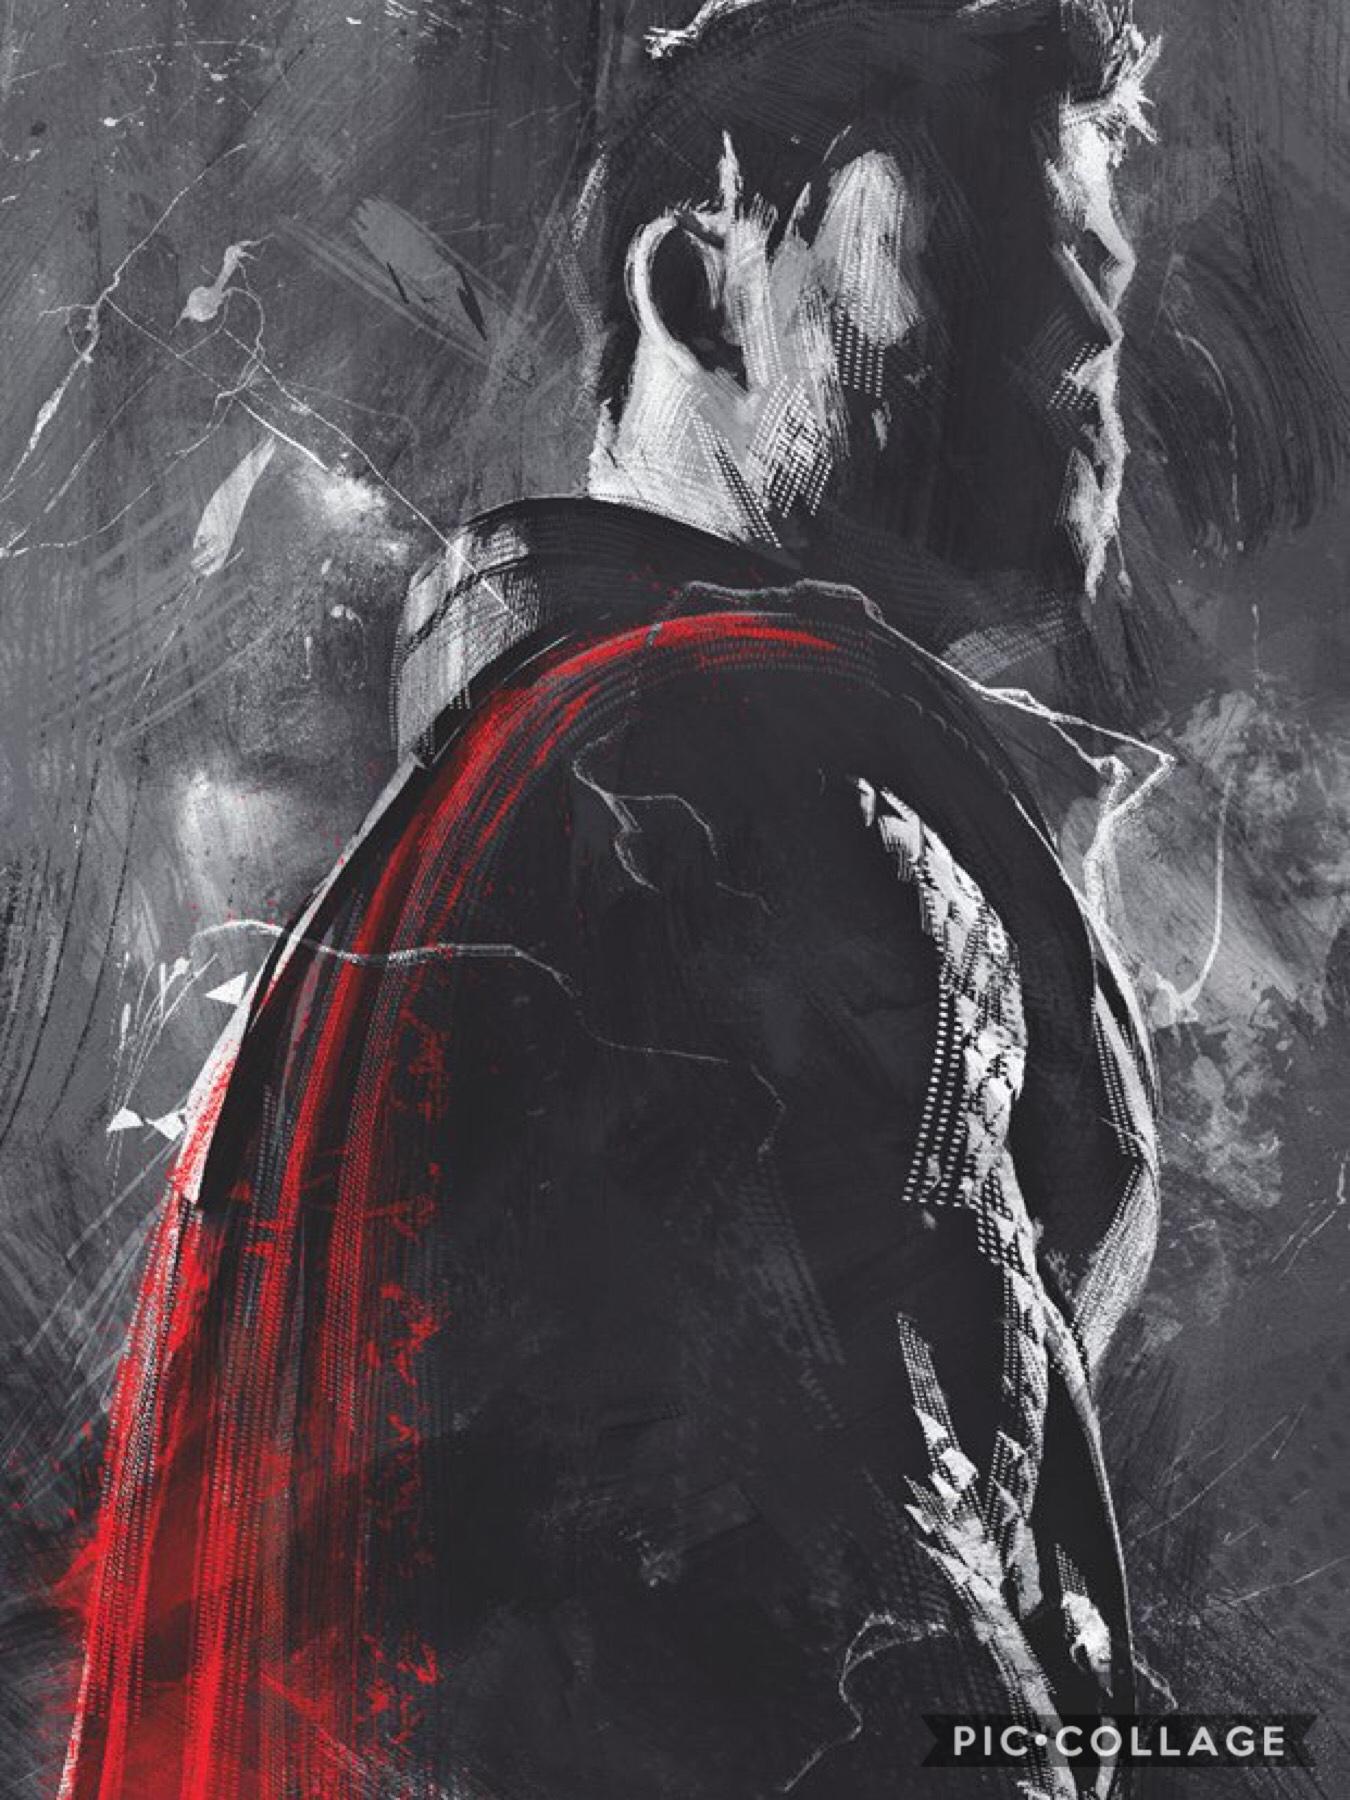 @Avengers #EndGame #Thor in 2019 by Marvel Studios